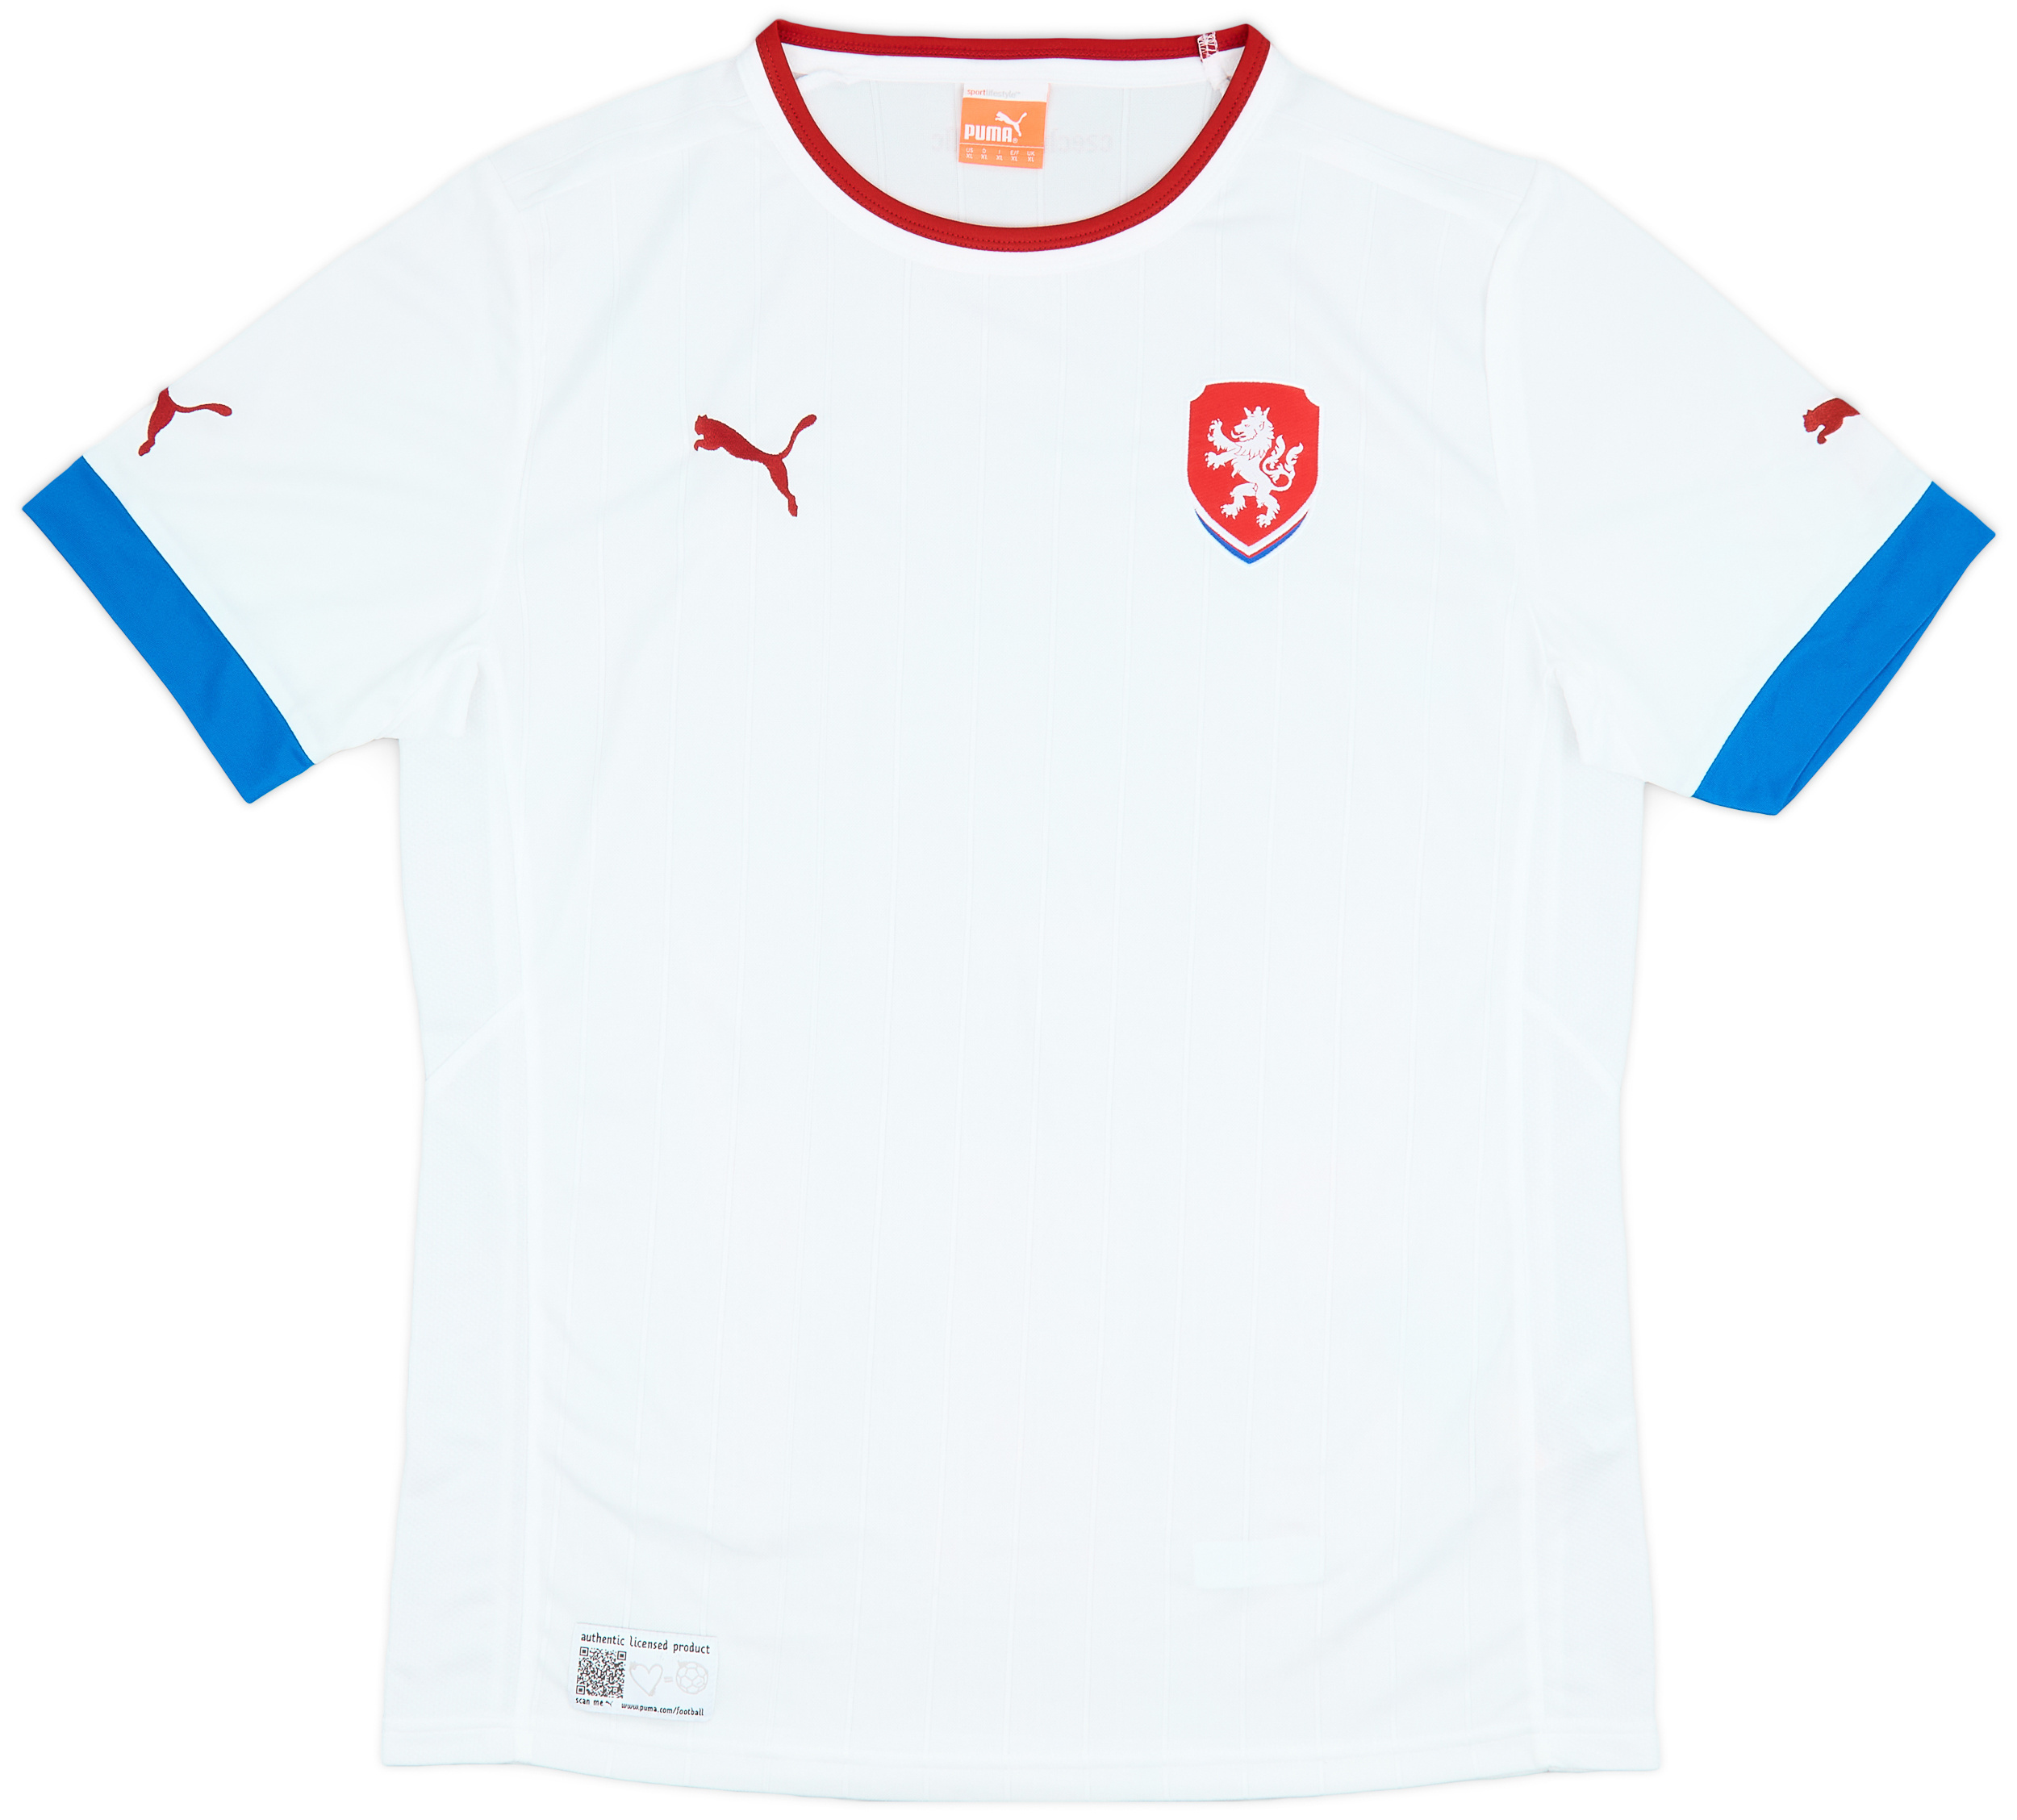 2012 Czech Republic Away Shirt - 9/10 - ()